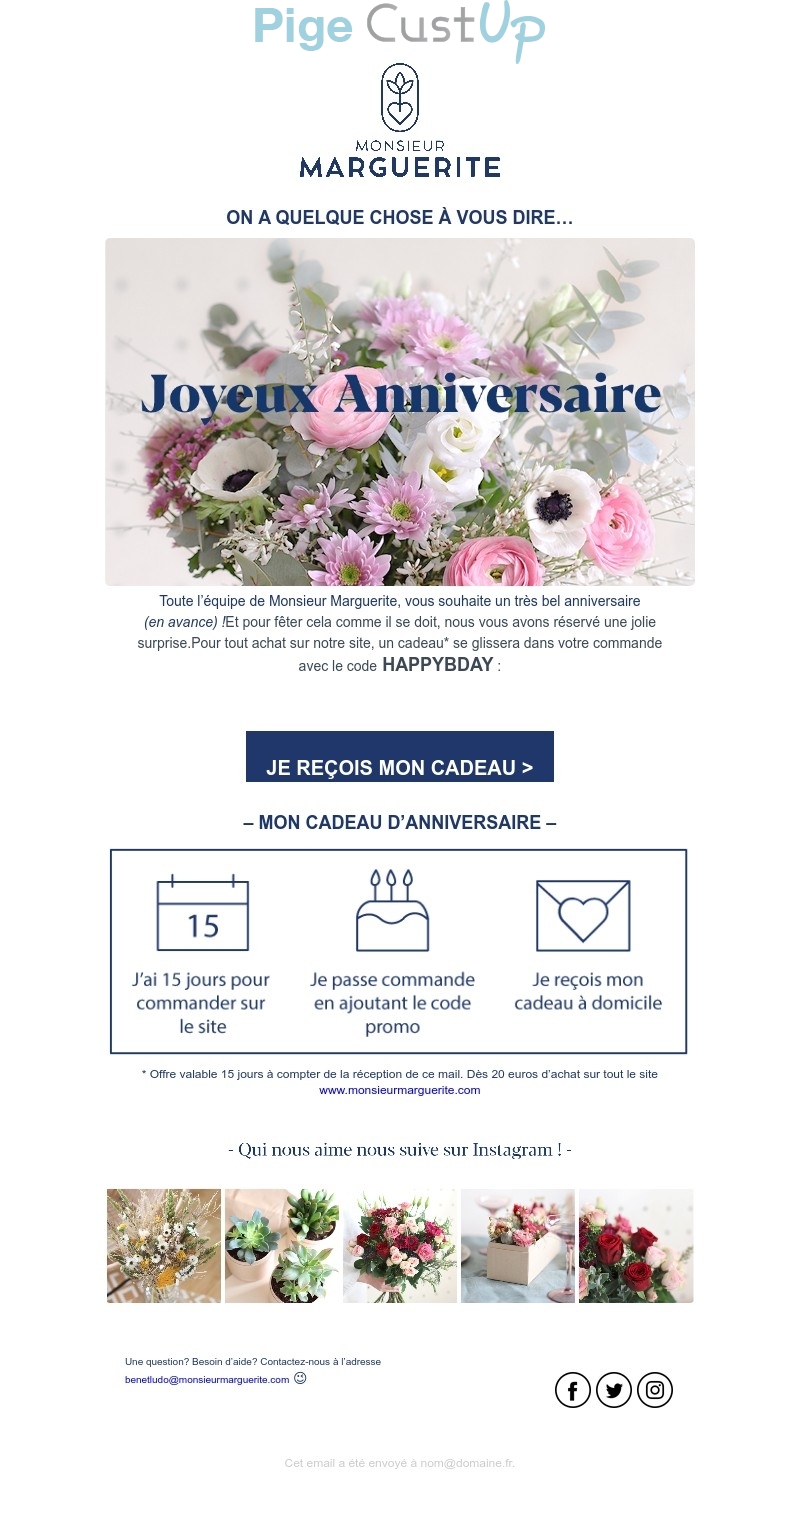 Exemple de Type de media  e-mailing - Monsieur Marguerite - Marketing relationnel - Anniversaire / Fête contact - Engagement Réseaux sociaux - Marketing Acquisition - Gratuit - Cadeau